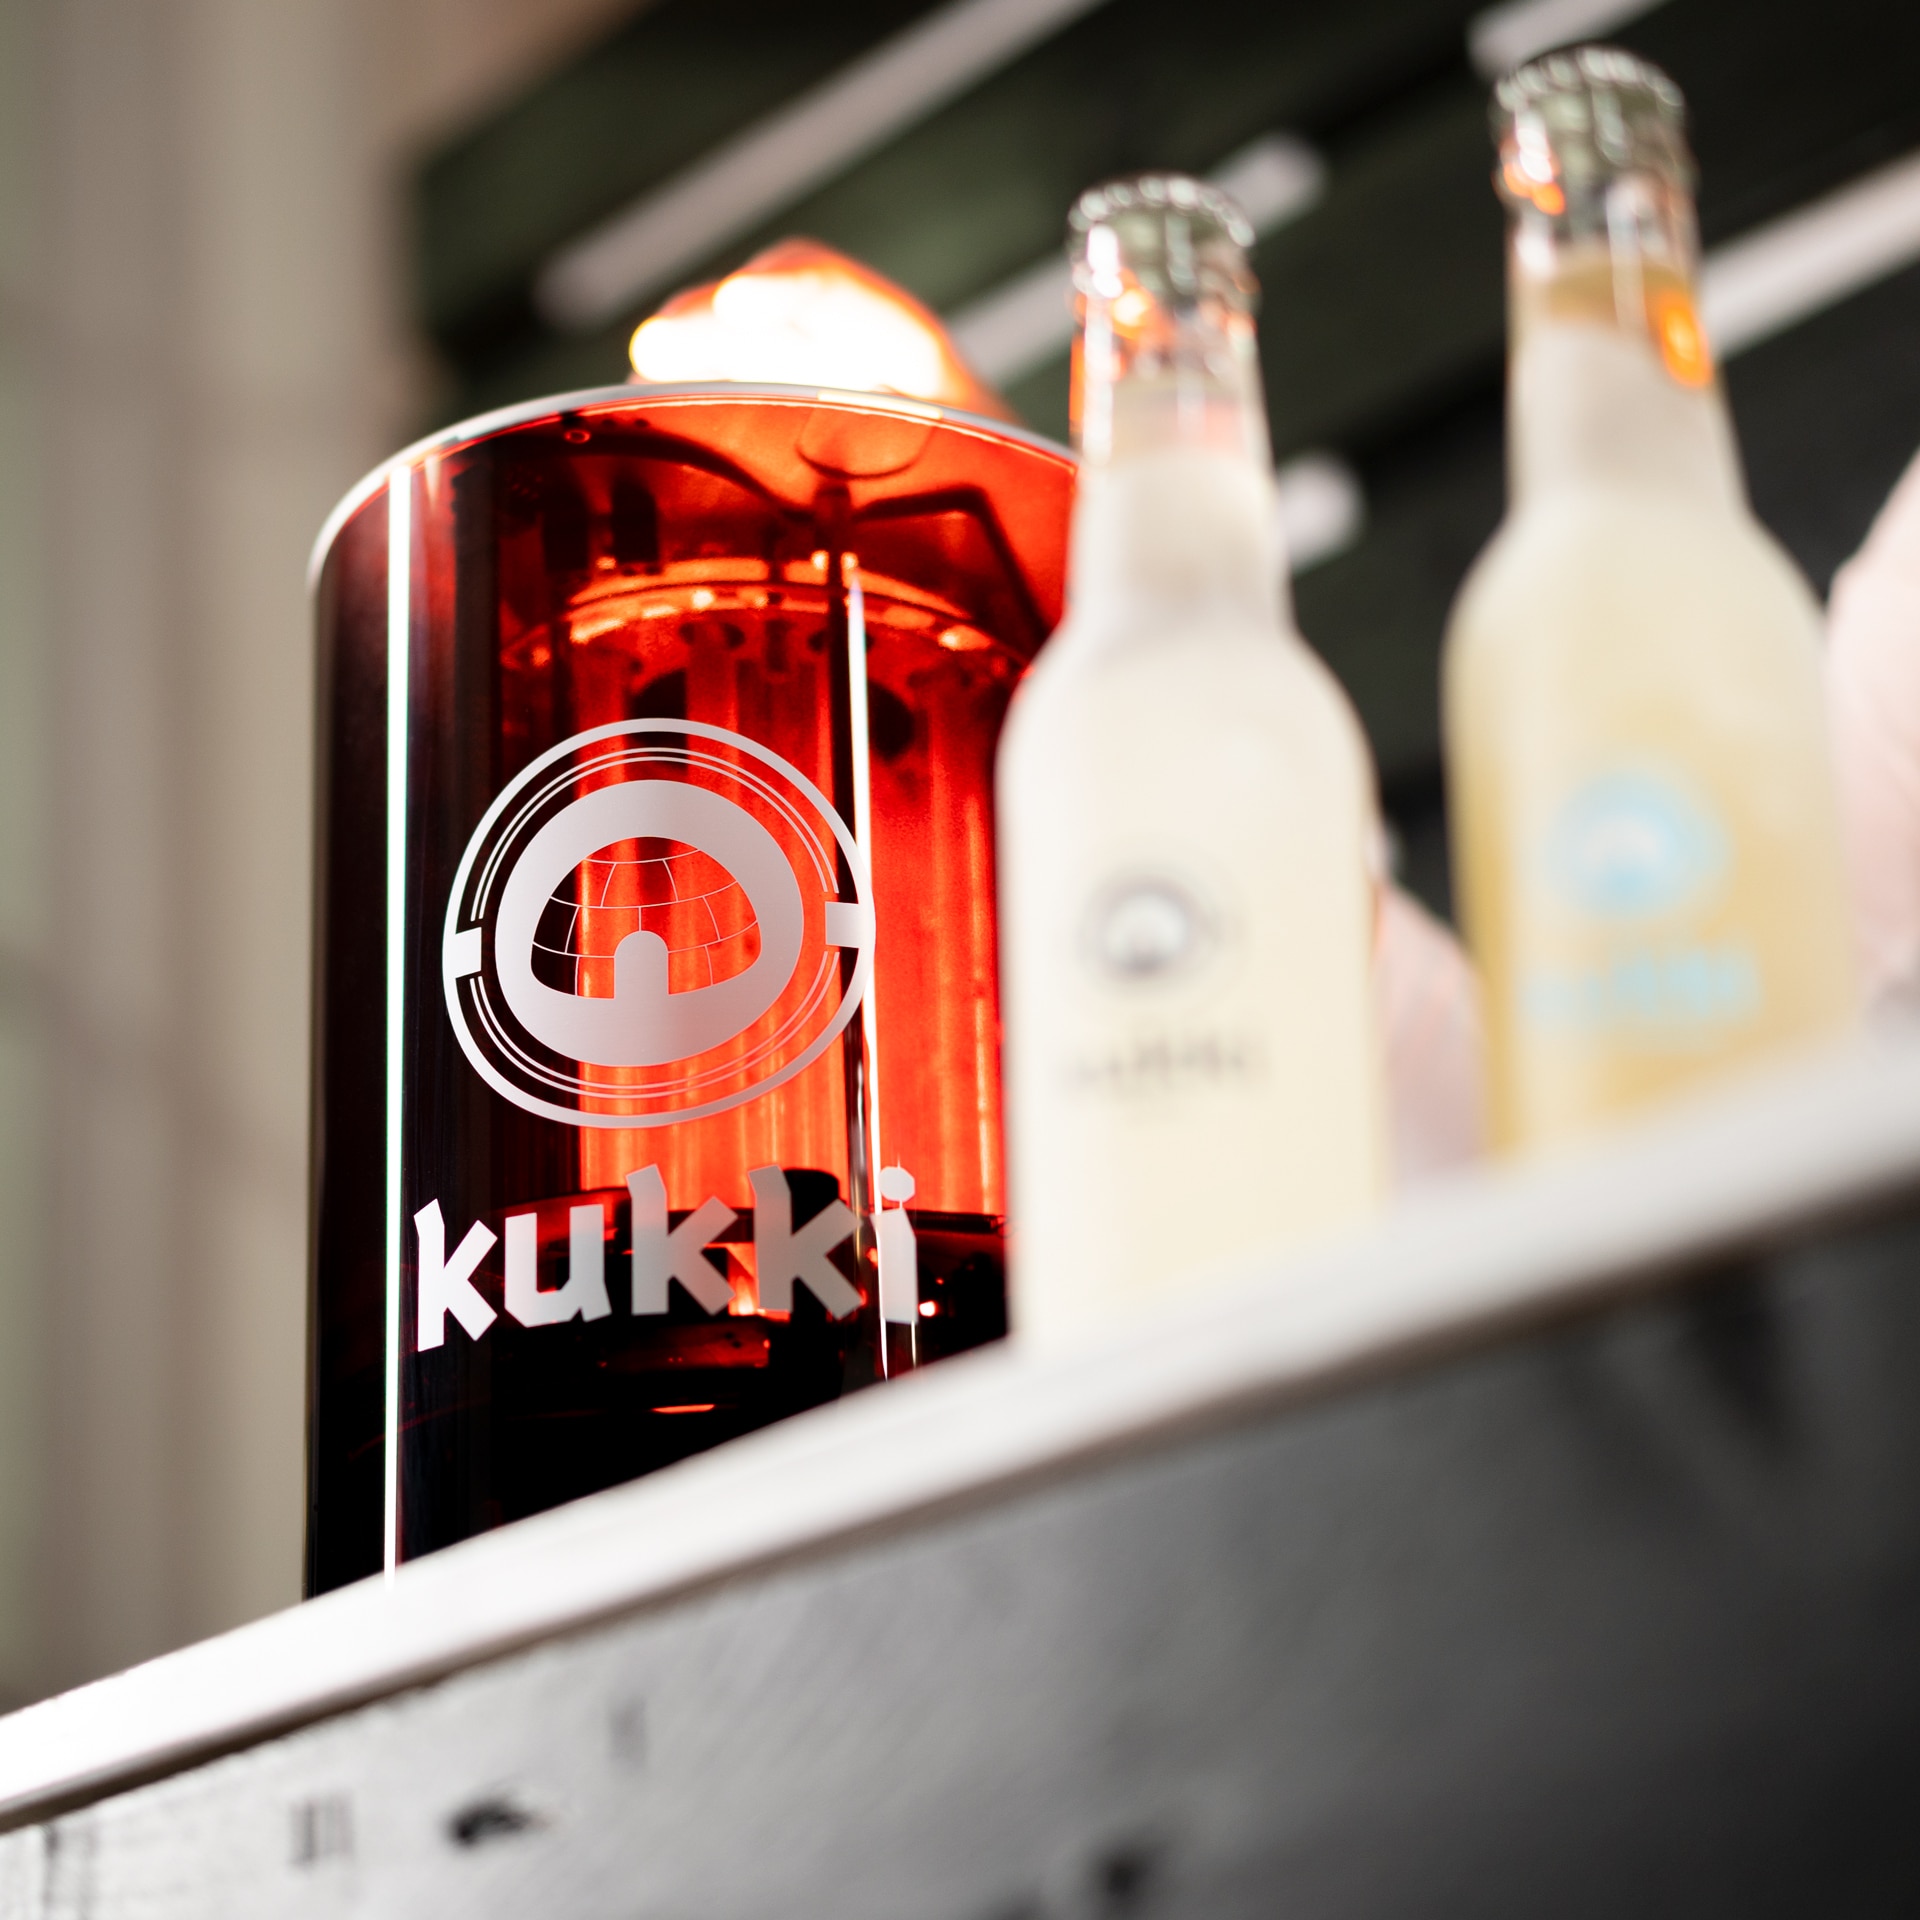 Kukki Cocktail Der Heißeste Erfrischungs Trend Yupermarktde Blog 4169